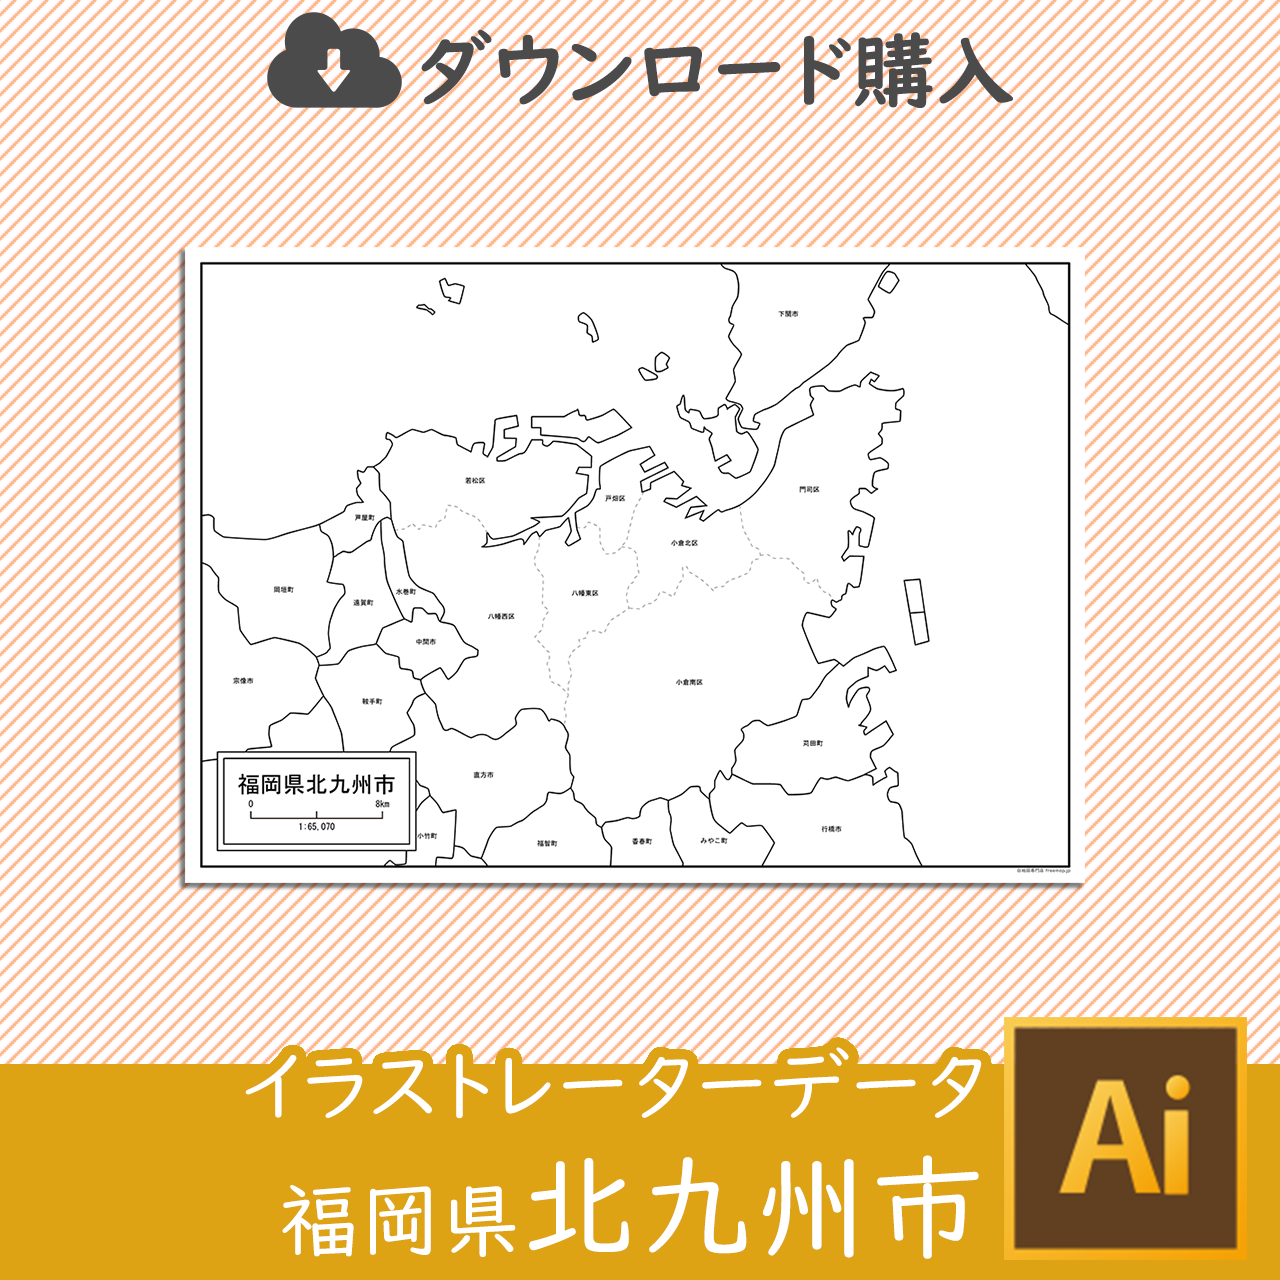 北九州市のaiデータのサムネイル画像